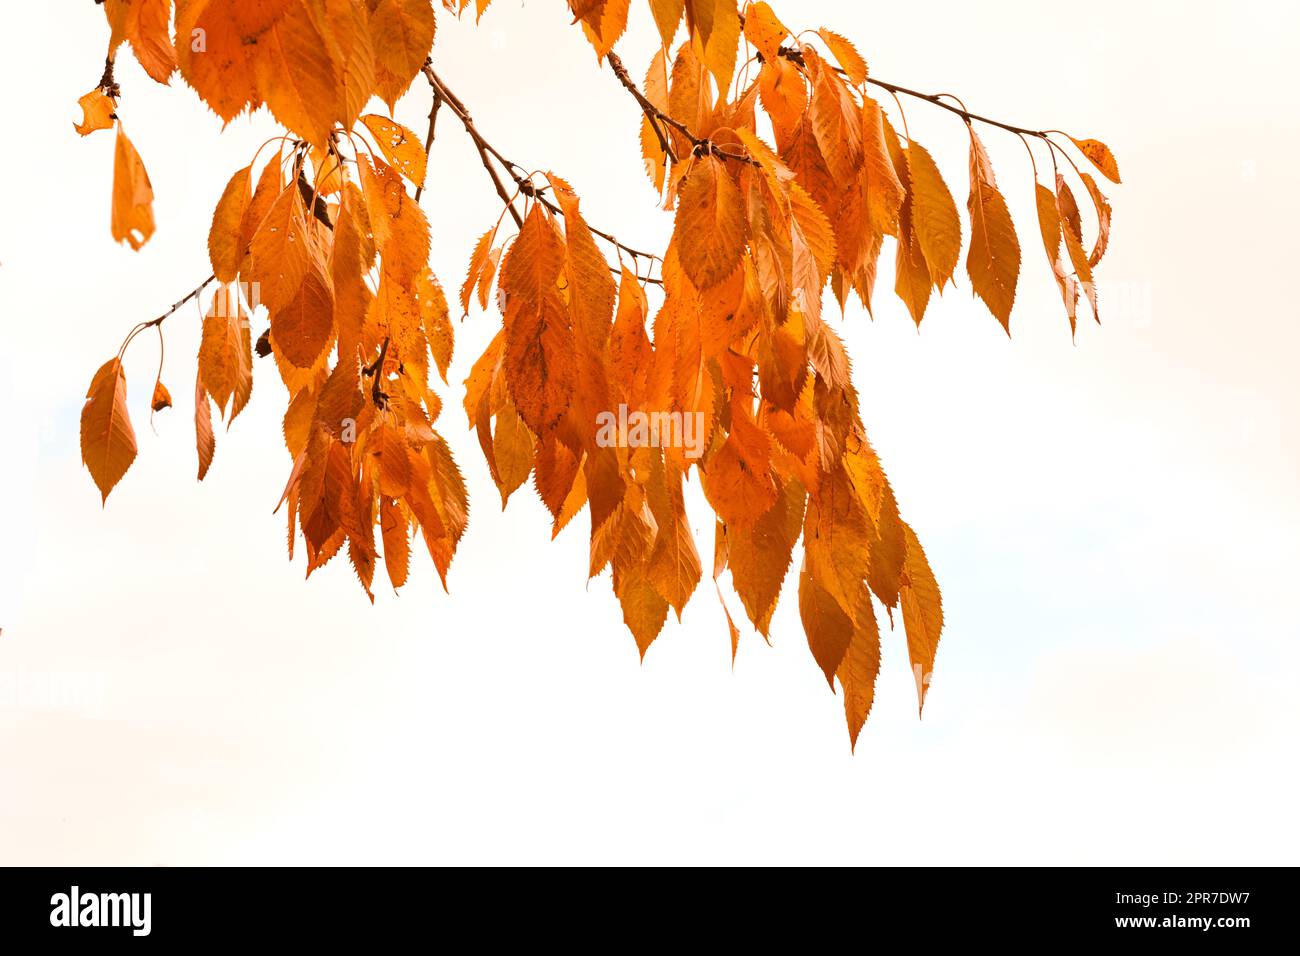 Foglie autunnali appese a un ramo di albero isolate su uno sfondo bianco. Splendida foglia dorata luminosa e vibrante delle piante durante l'autunno invernale. Natura gialla o marrone in un pomeriggio d'inverno Foto Stock